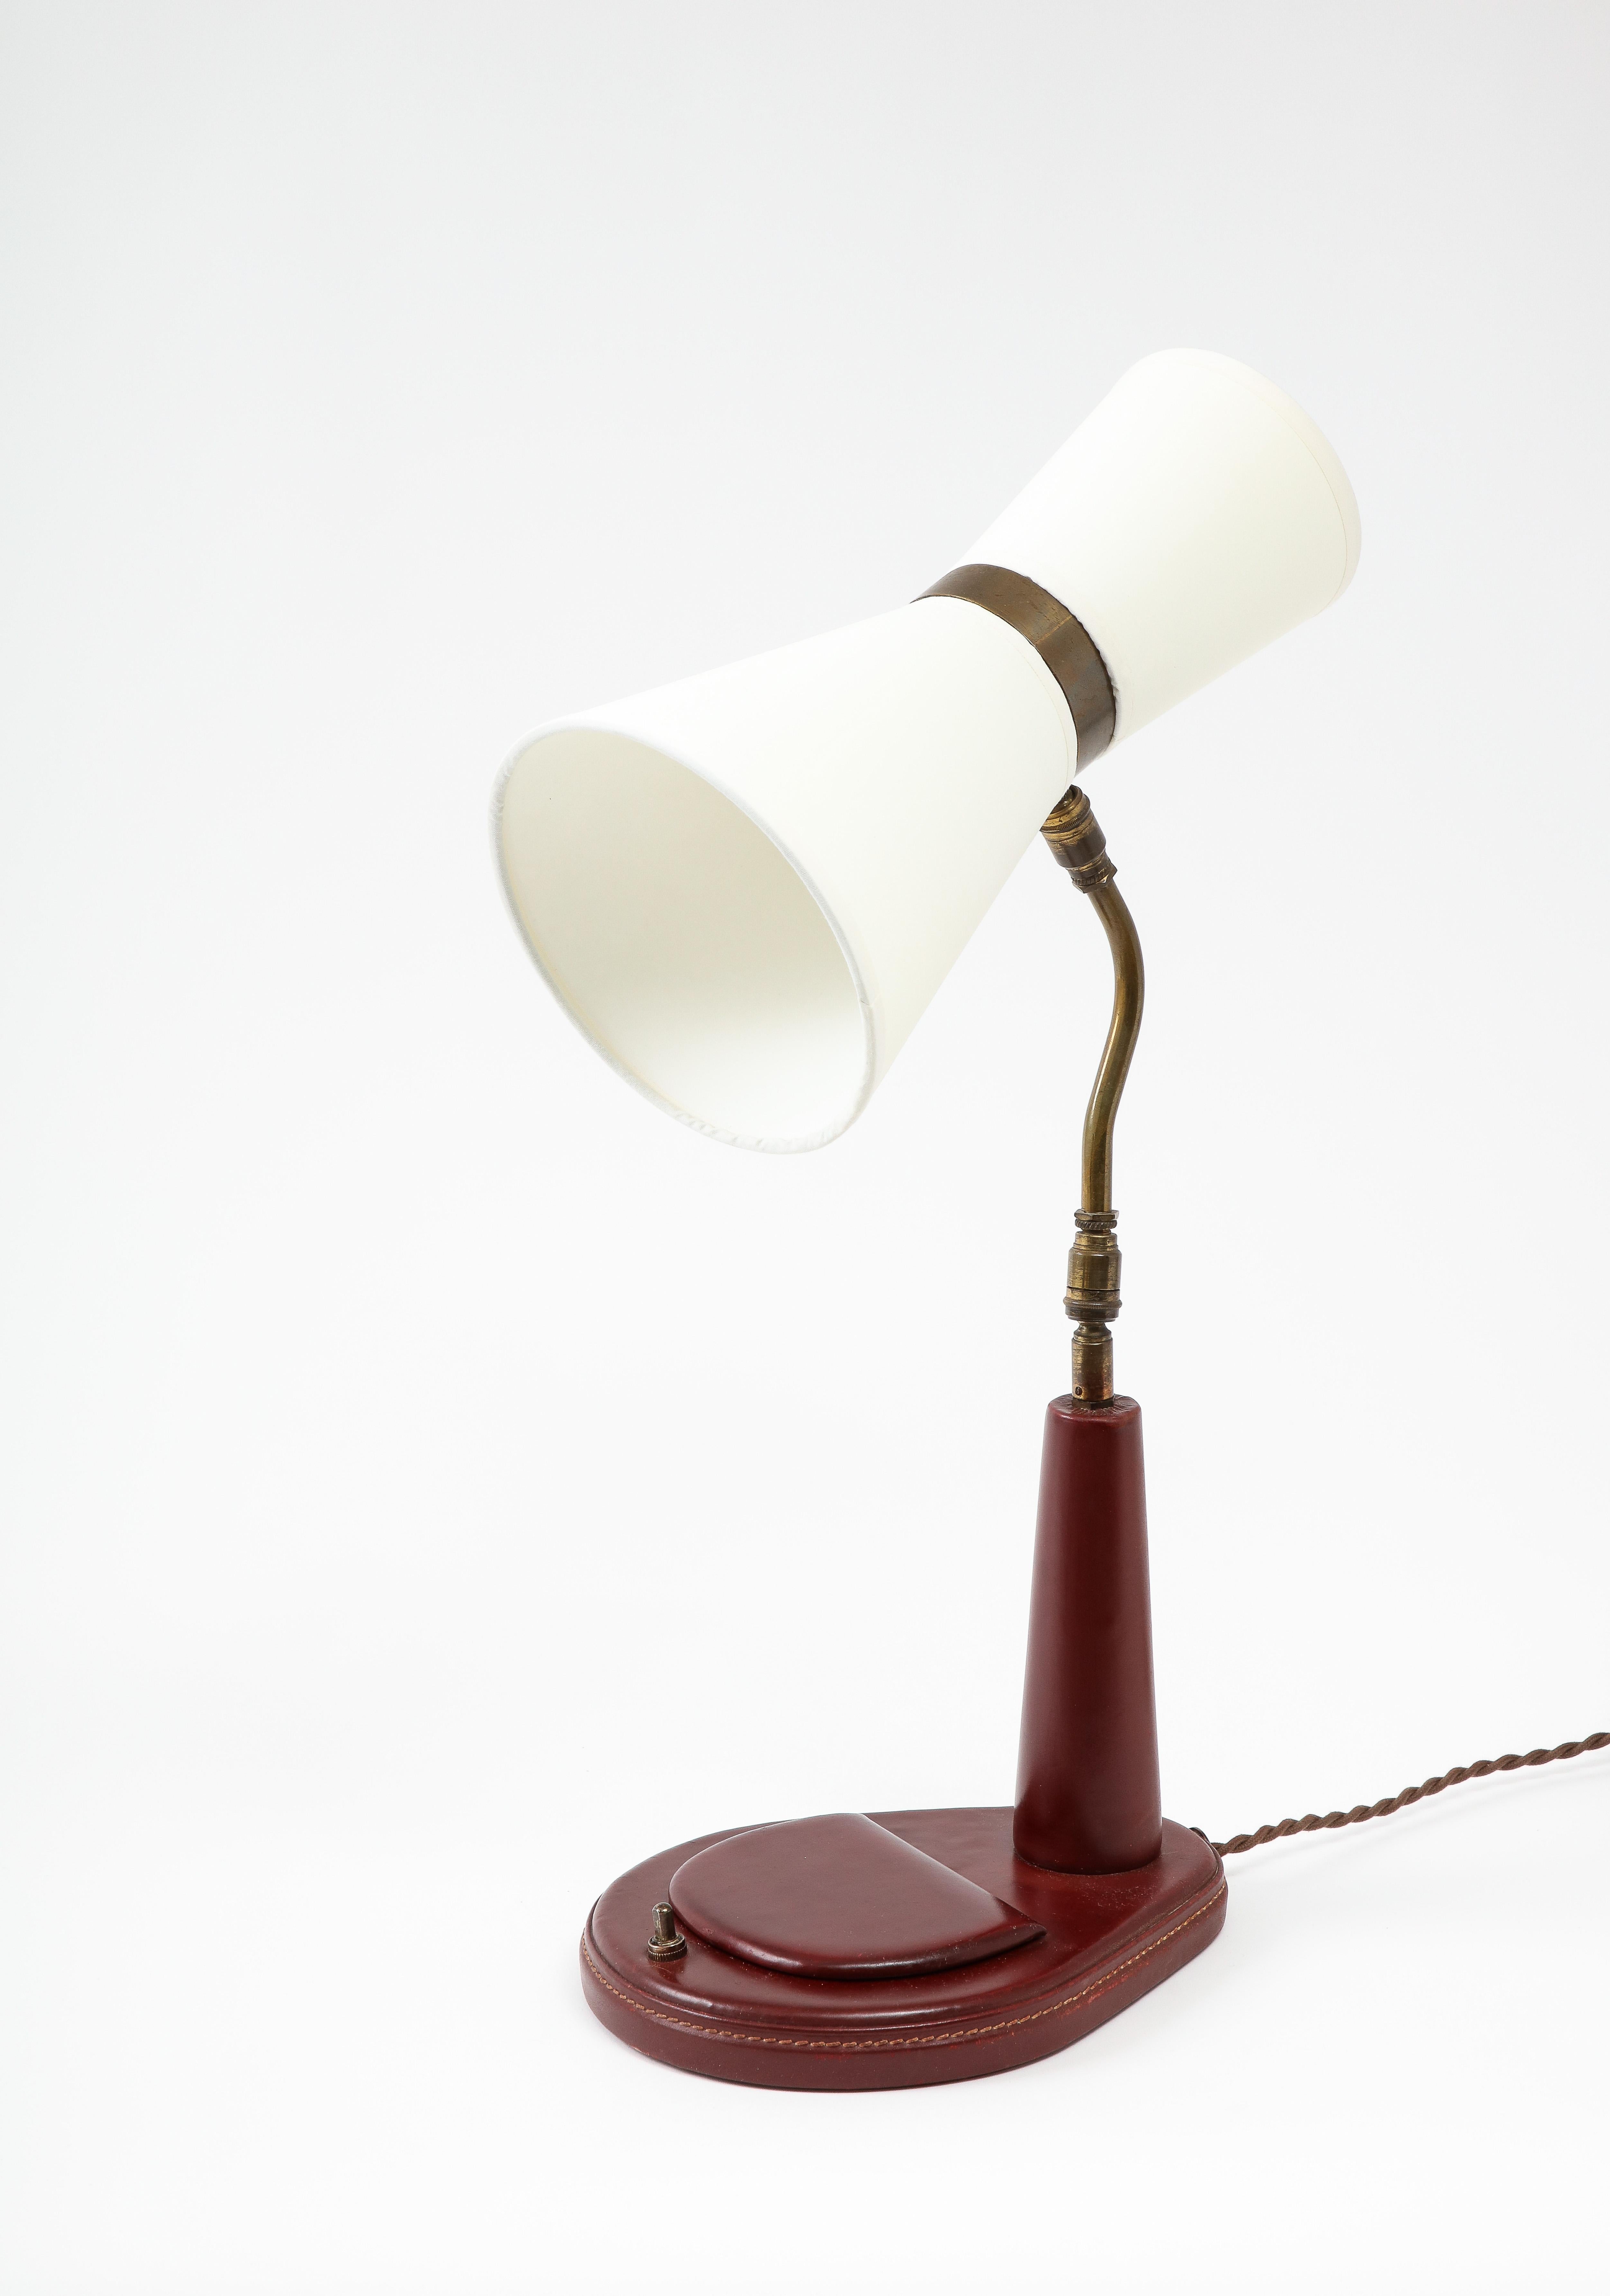 Lancel Burgundy Leather Desk Lamp after Adnet, France 1960's For Sale 2